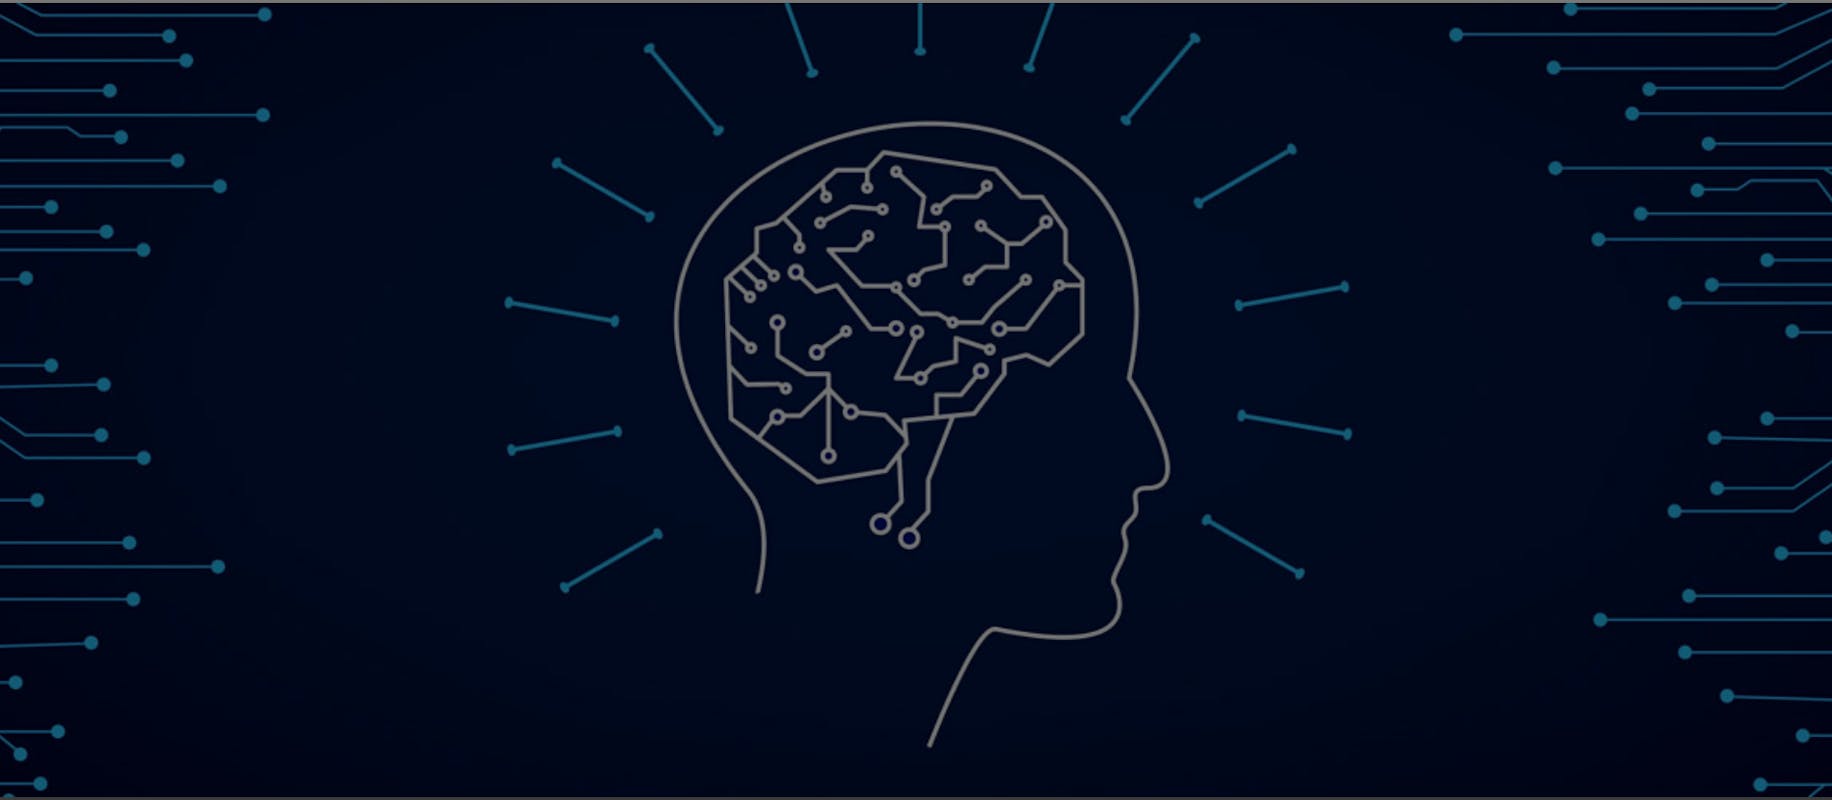 Immagine stilizzata di una persona di profilo e del suo cervello, rappresentato tramite una serie di linee e punti interconnessi tra loro dando l'idea di un insieme di reti connesse.